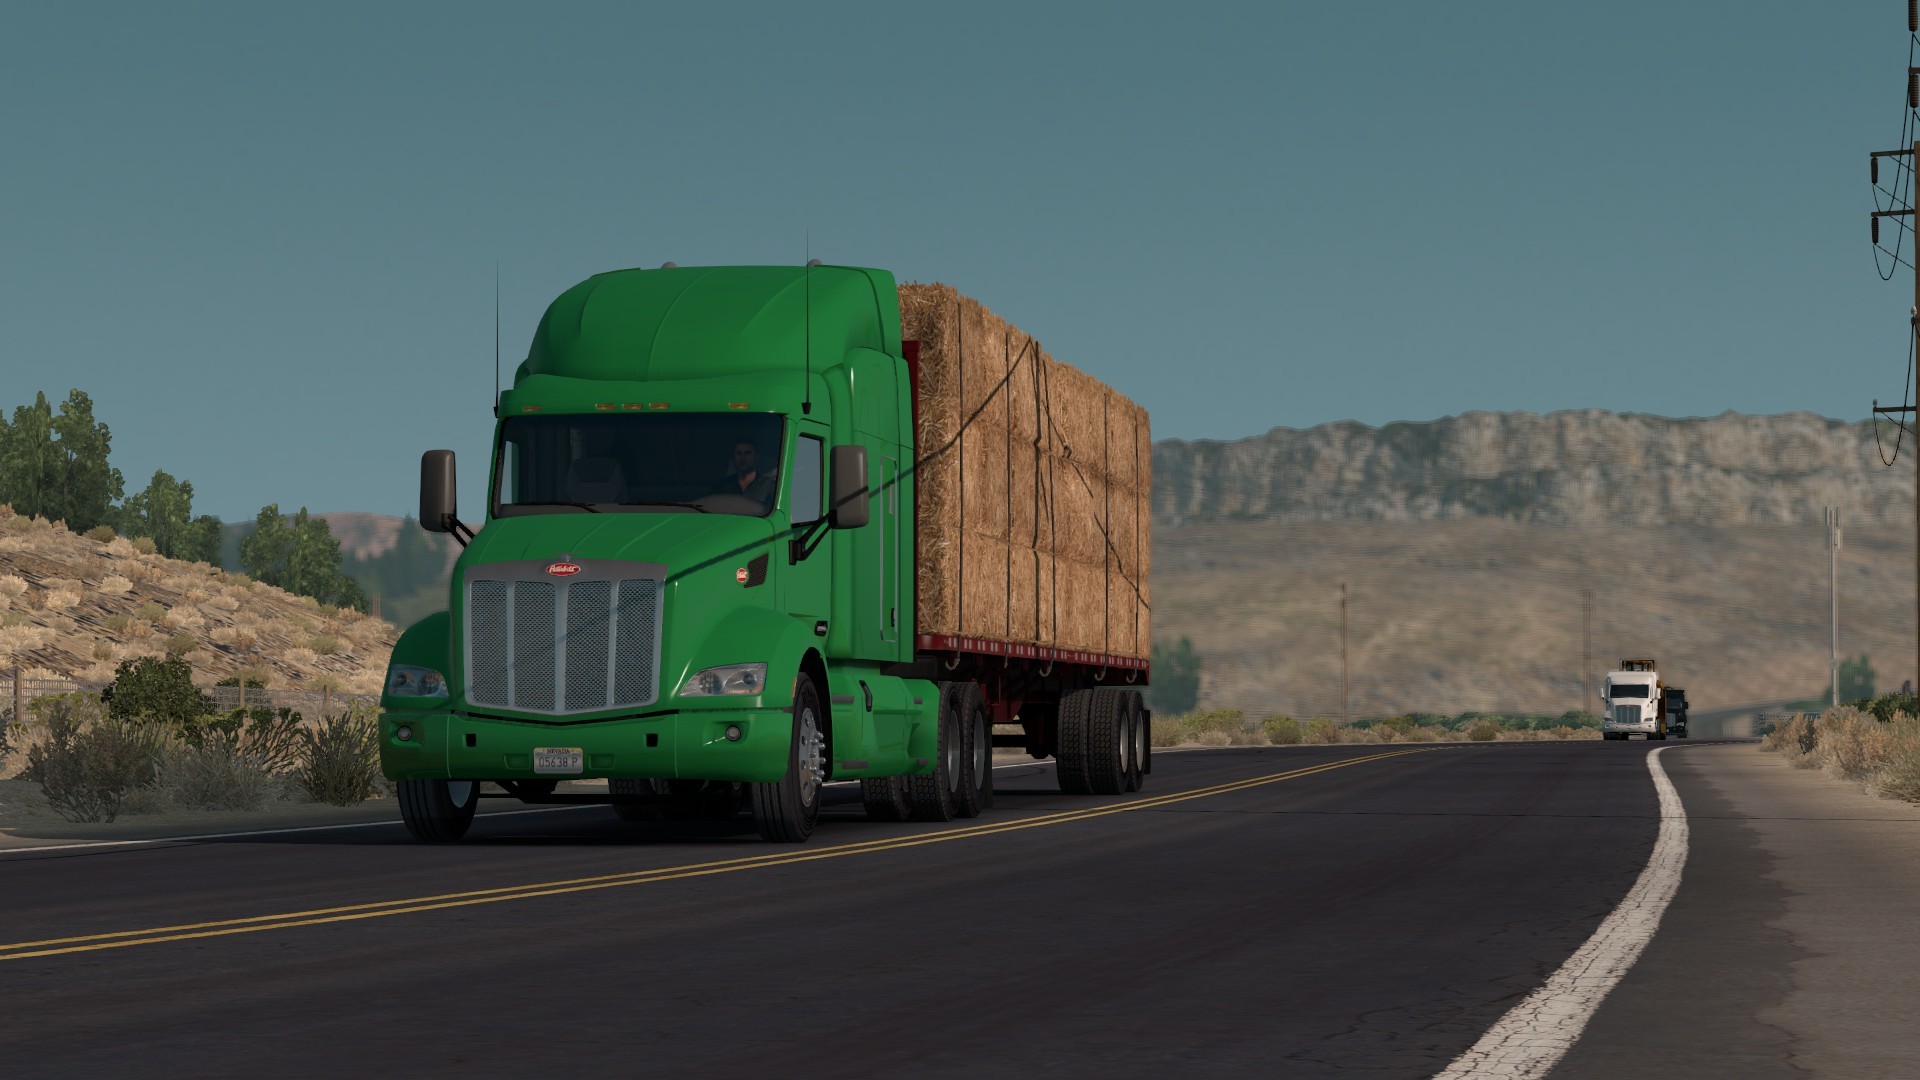 American Truck Simulator, Ats, Trucks, Peterbilt, Kenworth - American Truck Simulator Background - HD Wallpaper 